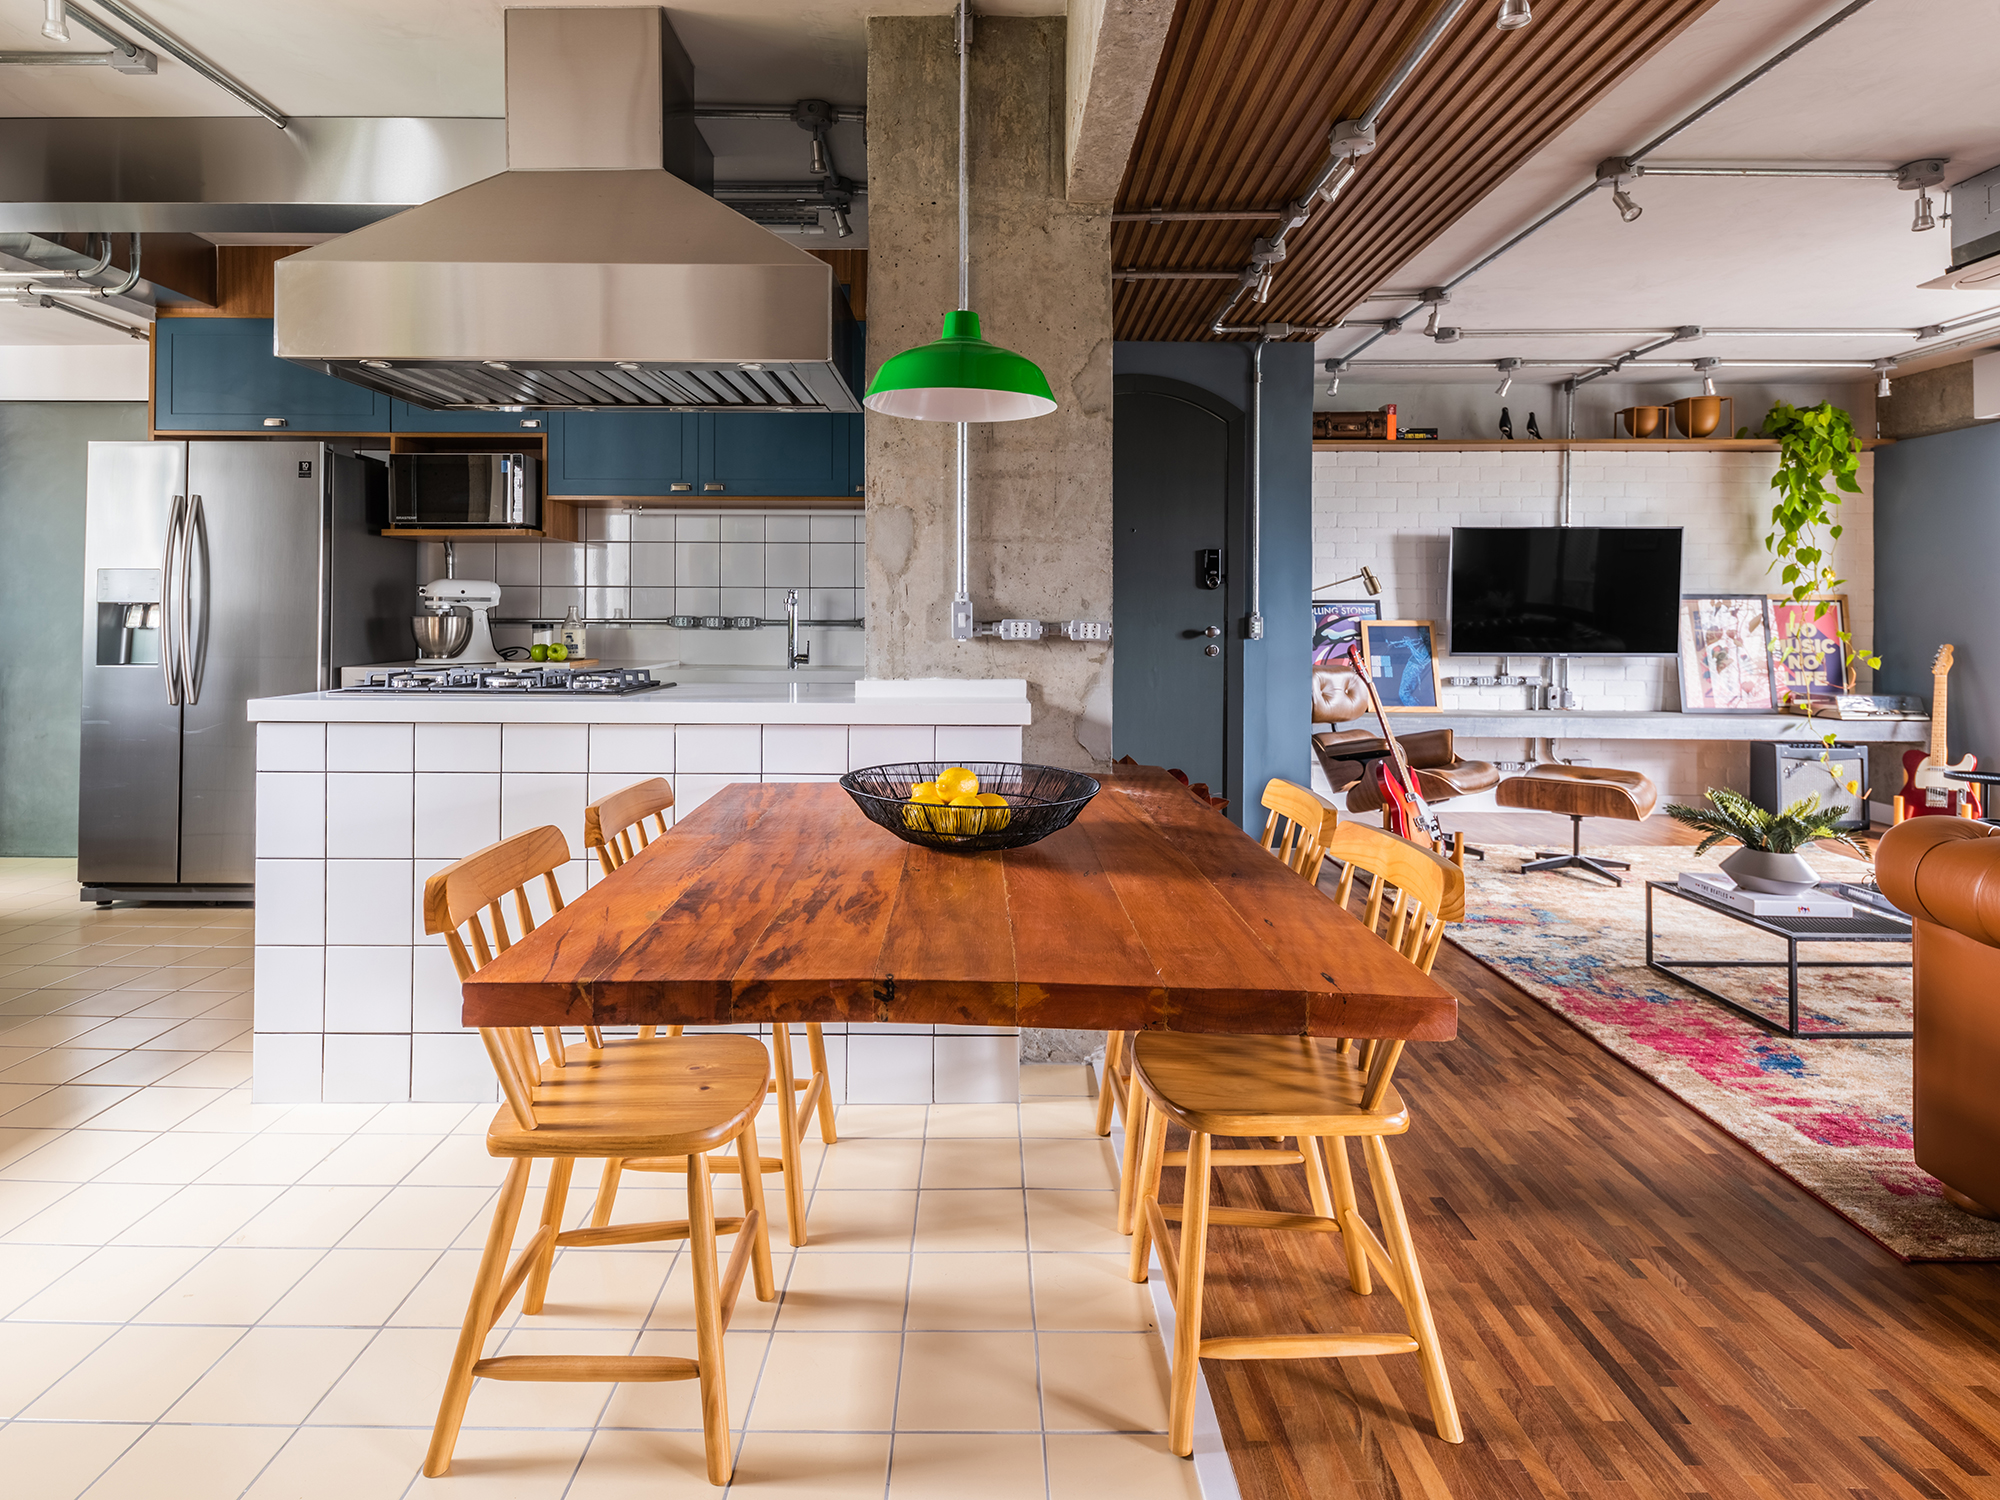 Estilo industrial e elementos clássicos se unem em apartamento de 130 m². Projeto de Pietro Terlizzi. Na foto, cozinha com marcenaria azul e tiles na parede. Sala de jantar integrada ao social.